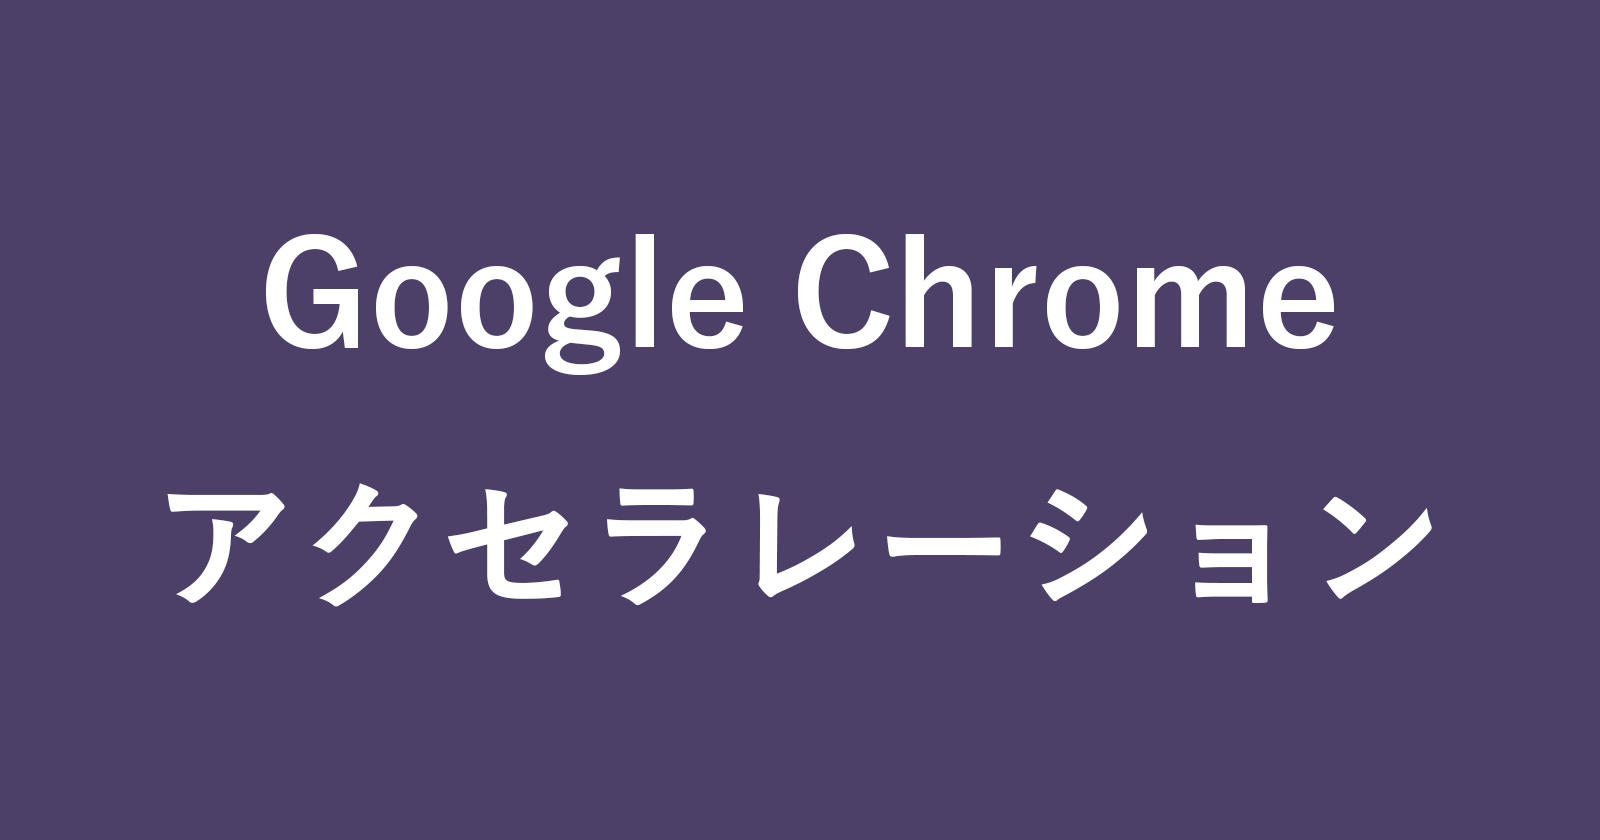 google chrome hardware acceleration